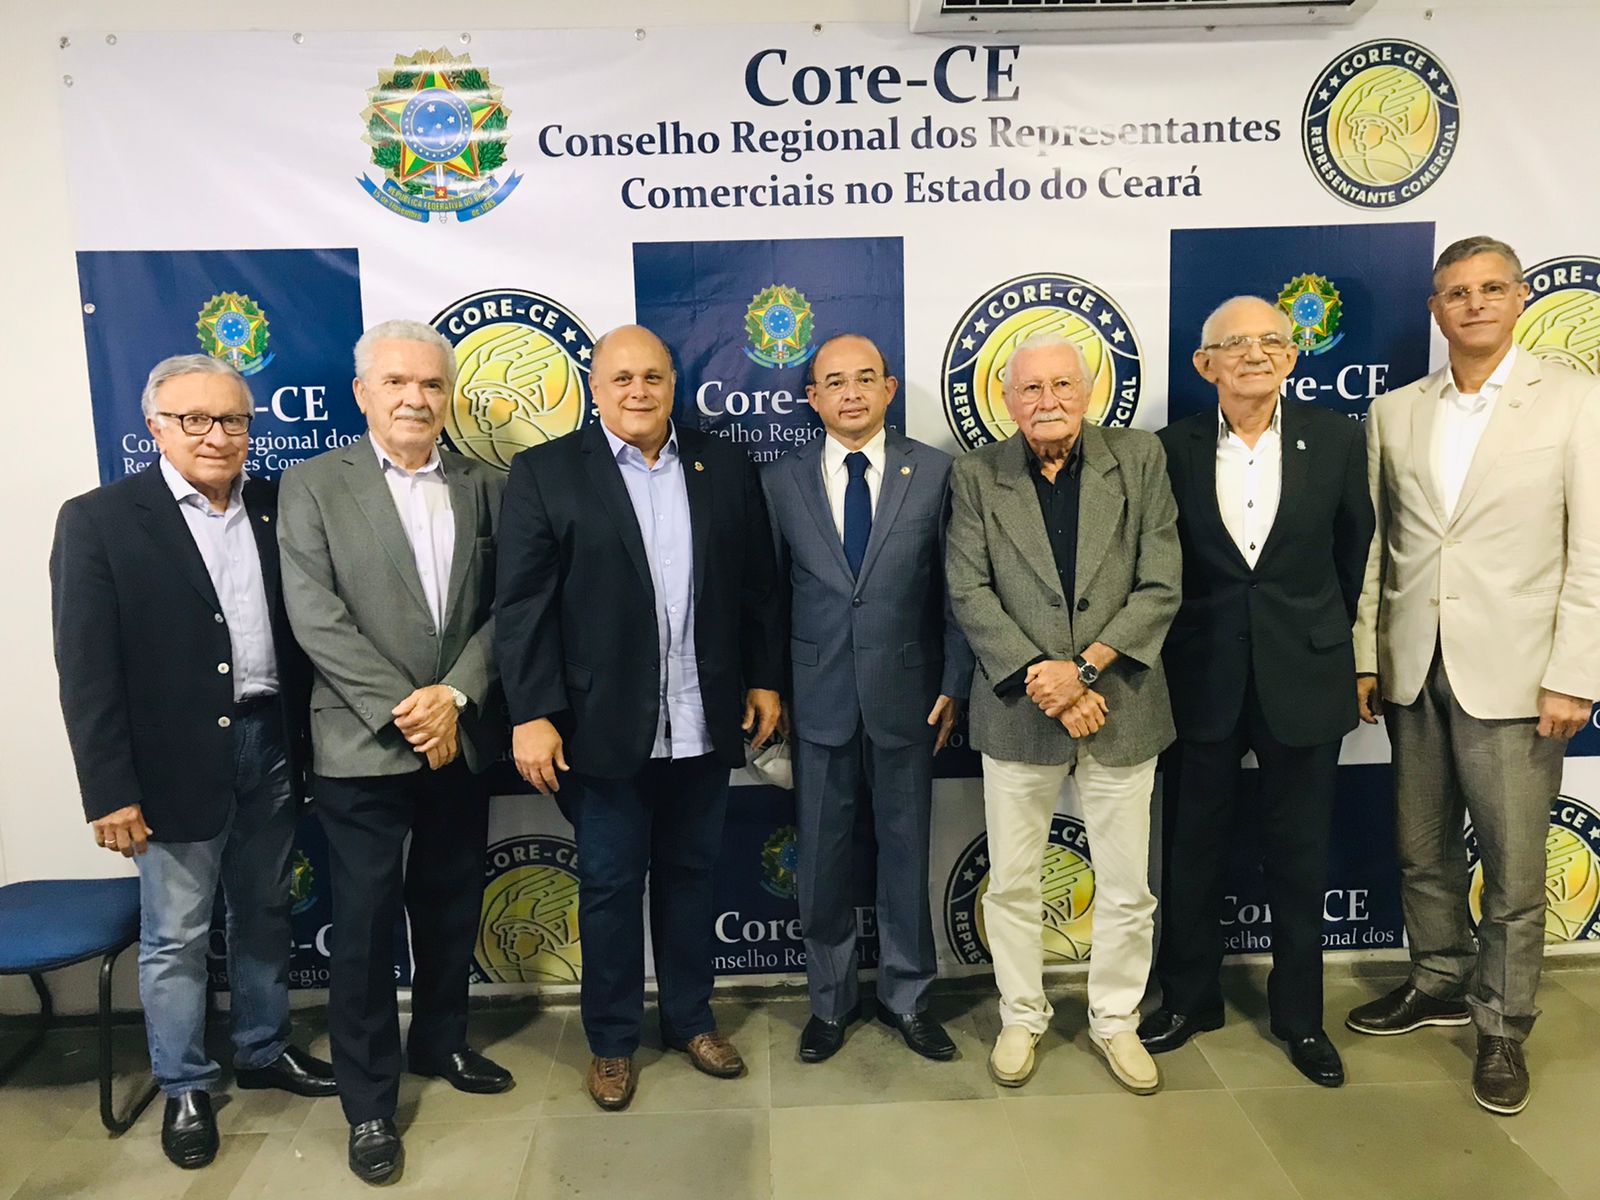 Dirigentes do Core-CE apresentam a deputado proposta para isenção de ICMS na compra de veículos